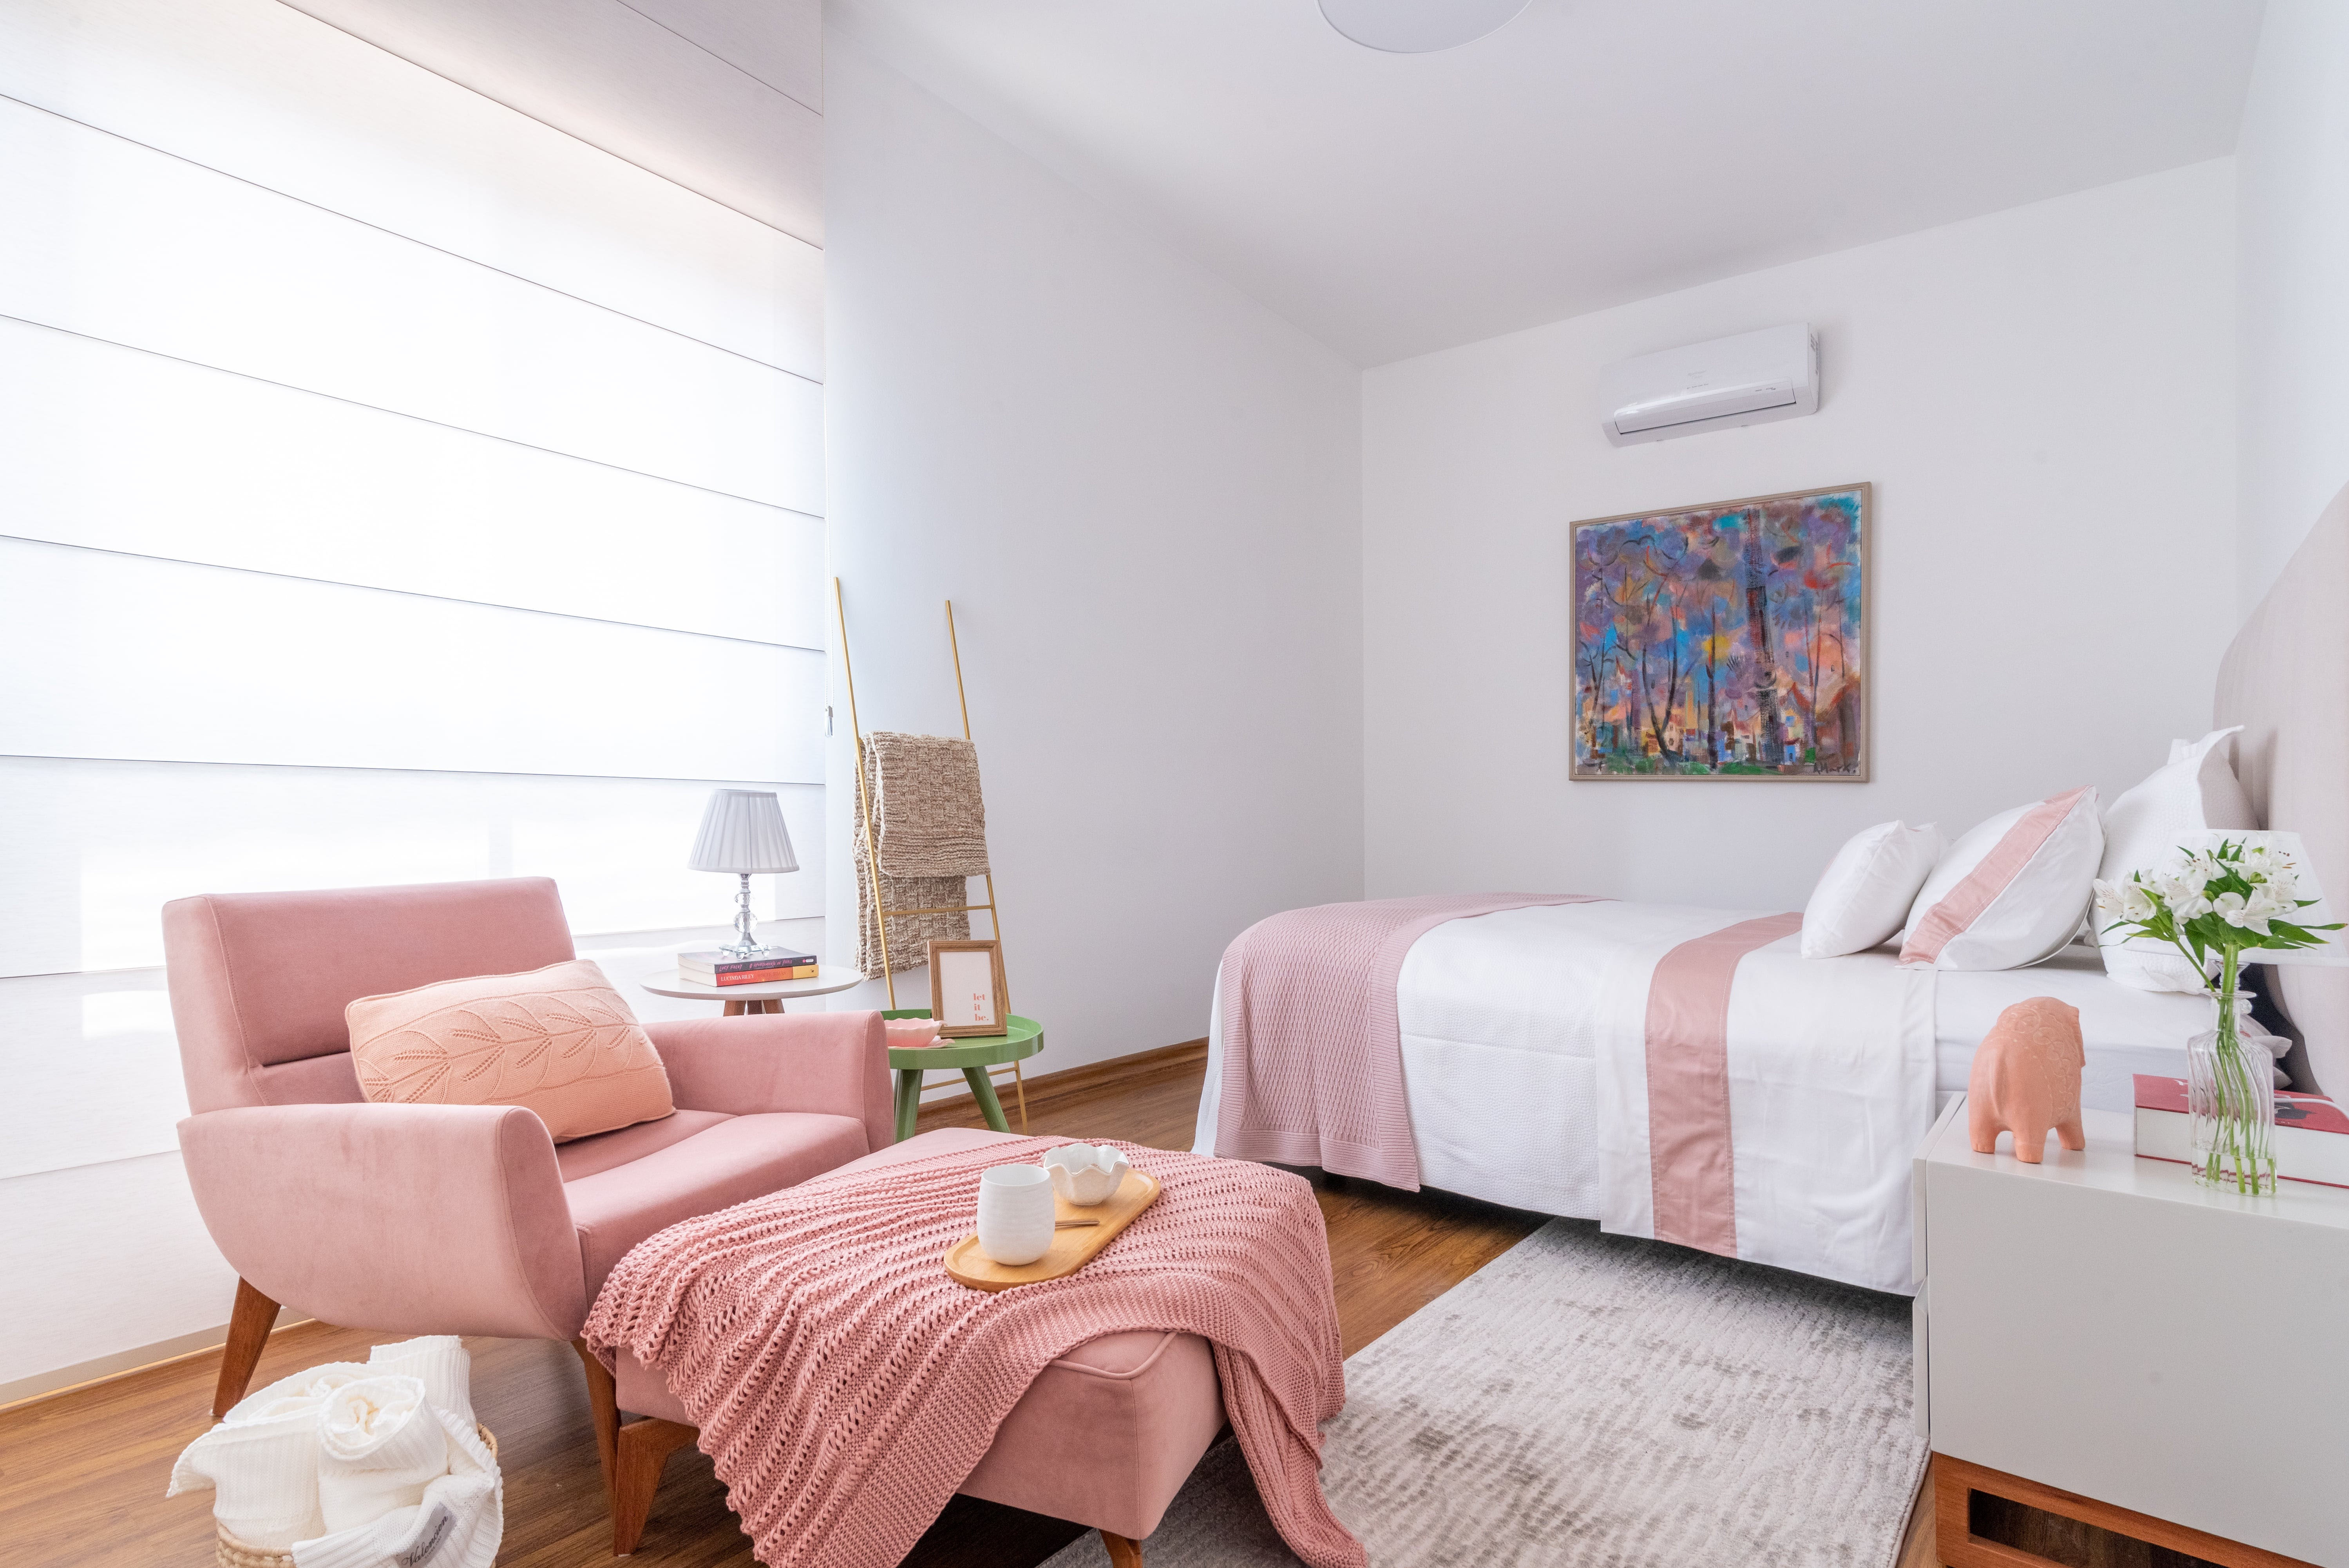 O romantismo do rosa deu o tom do décor no dormitório da moradora | Projeto Isabella Nalon Arquitetura | Foto: Julia Herman